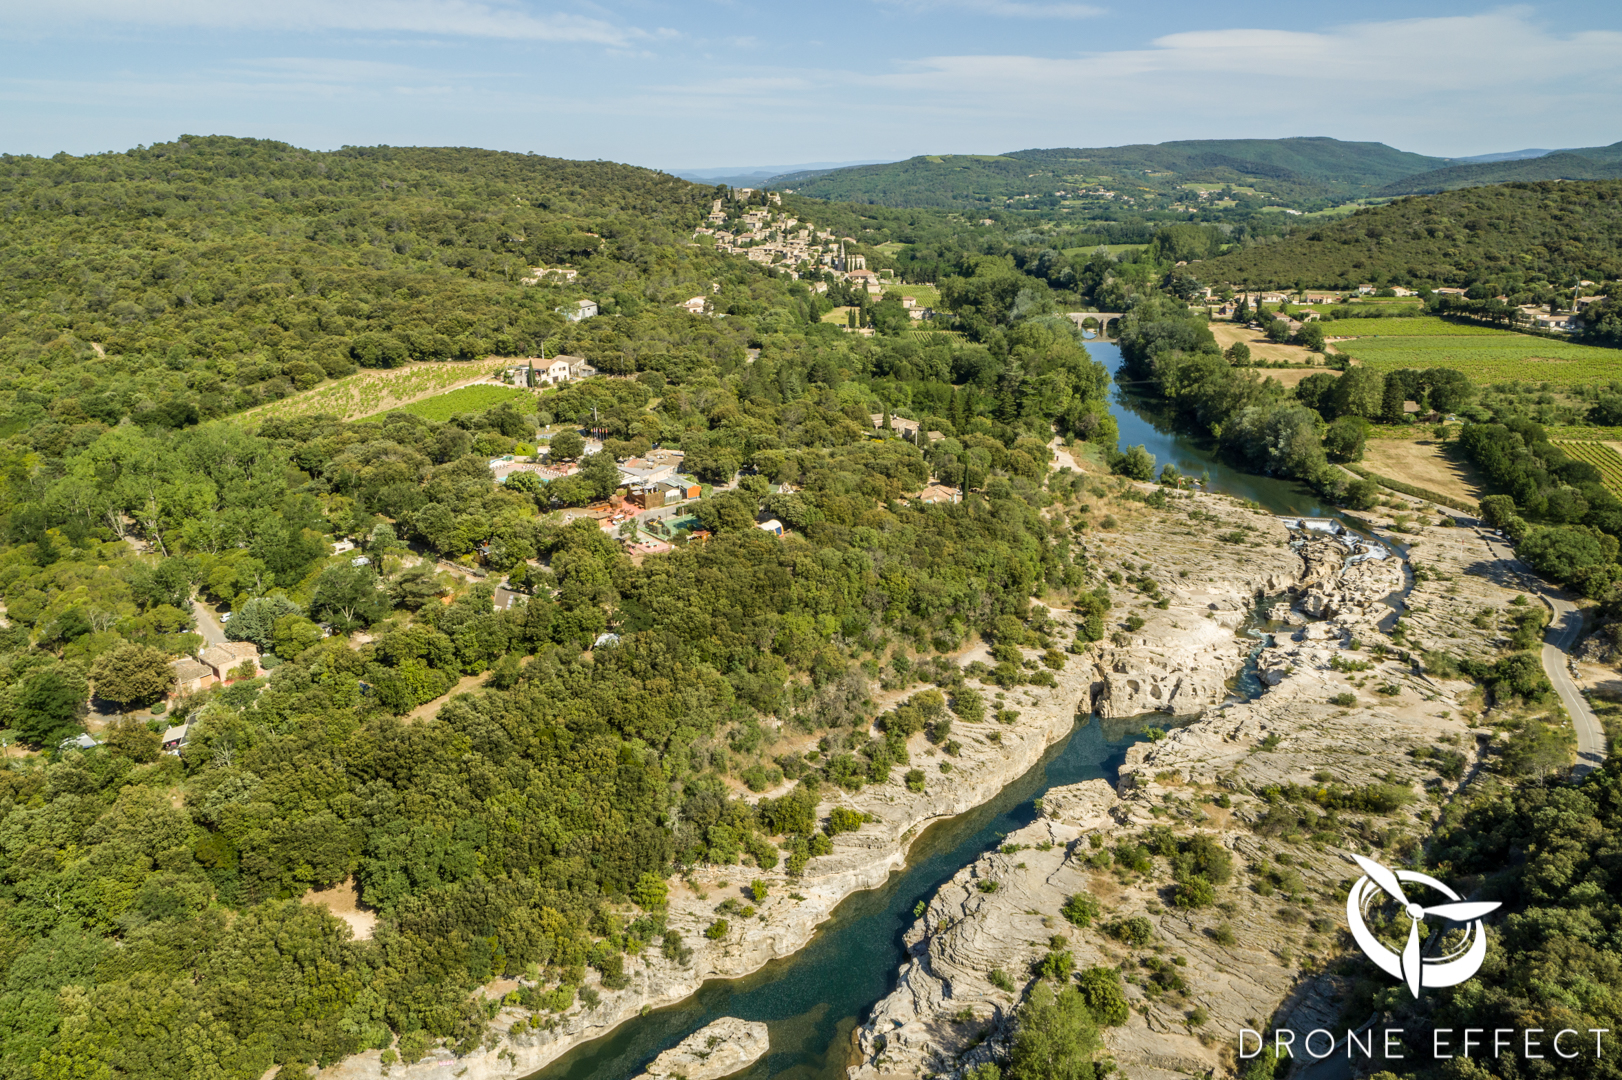 Prise de vue aérienne de la Roque sur Cèze dans le Gard